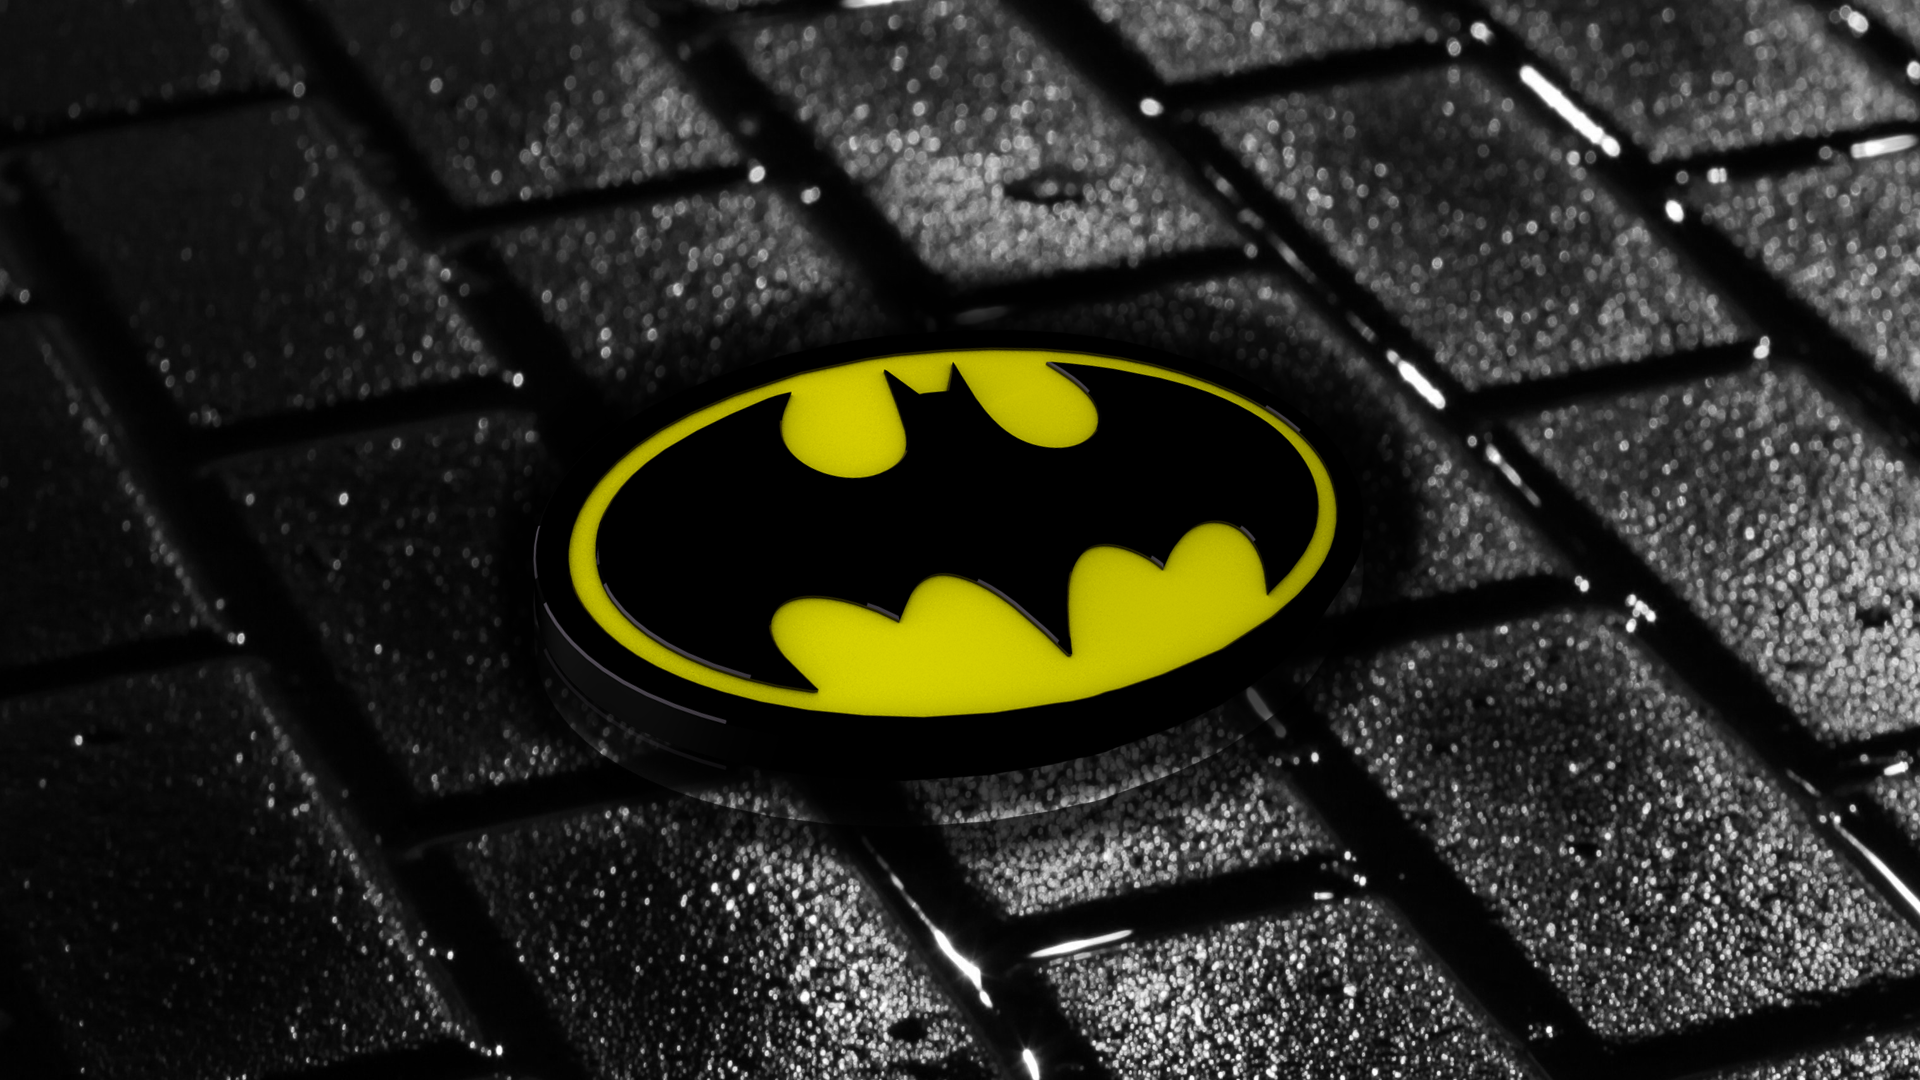  Batman  Logo HD Wallpapers  PixelsTalk Net